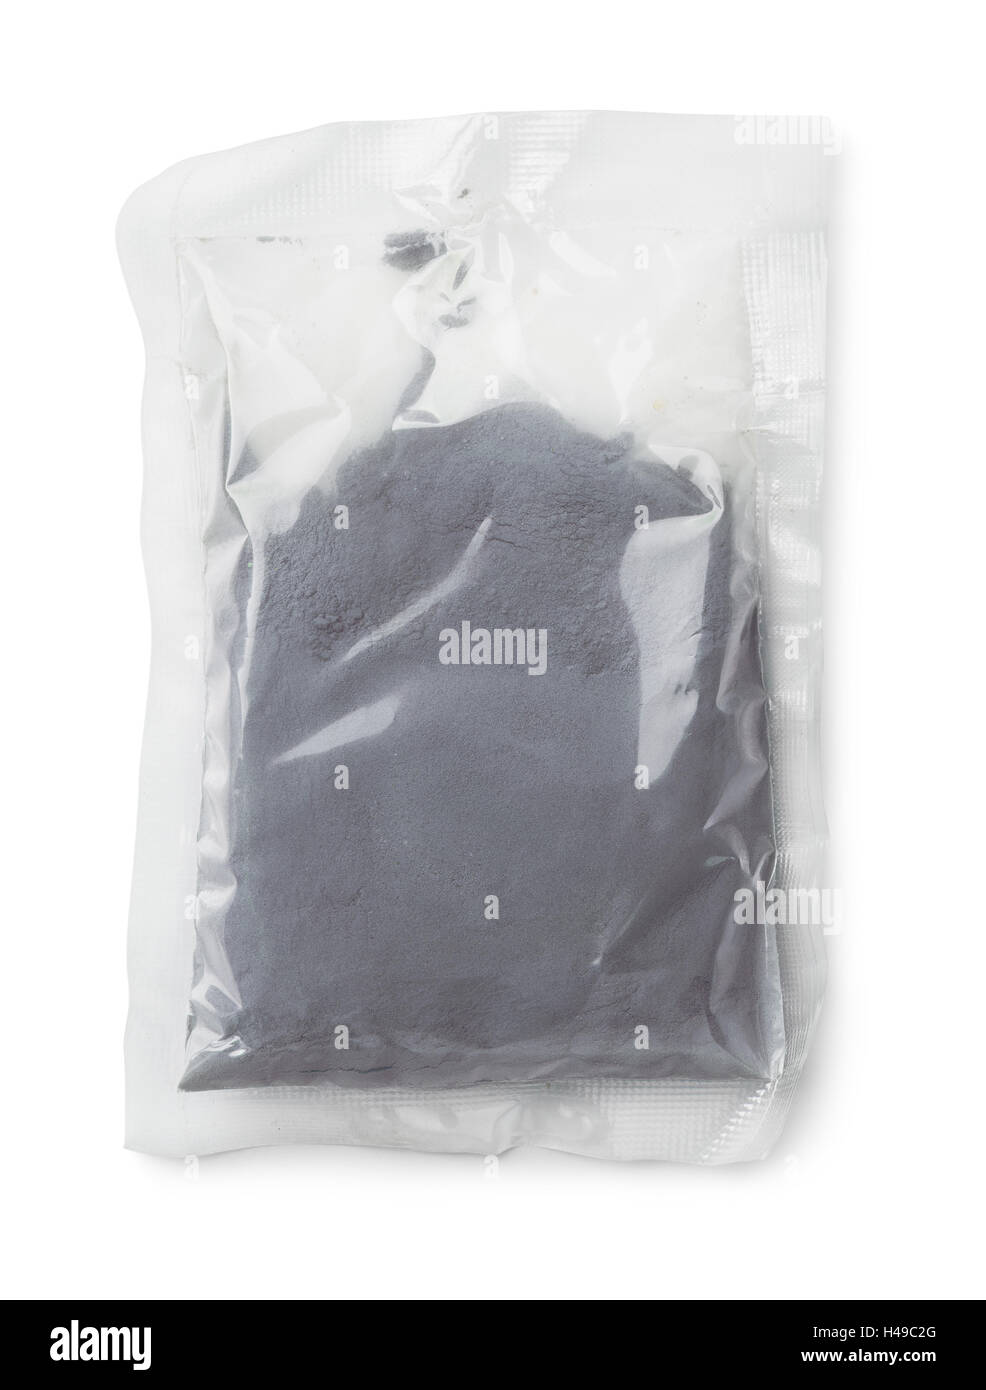 Sac en plastique bleu d'argile cosmétique isolated on white Banque D'Images